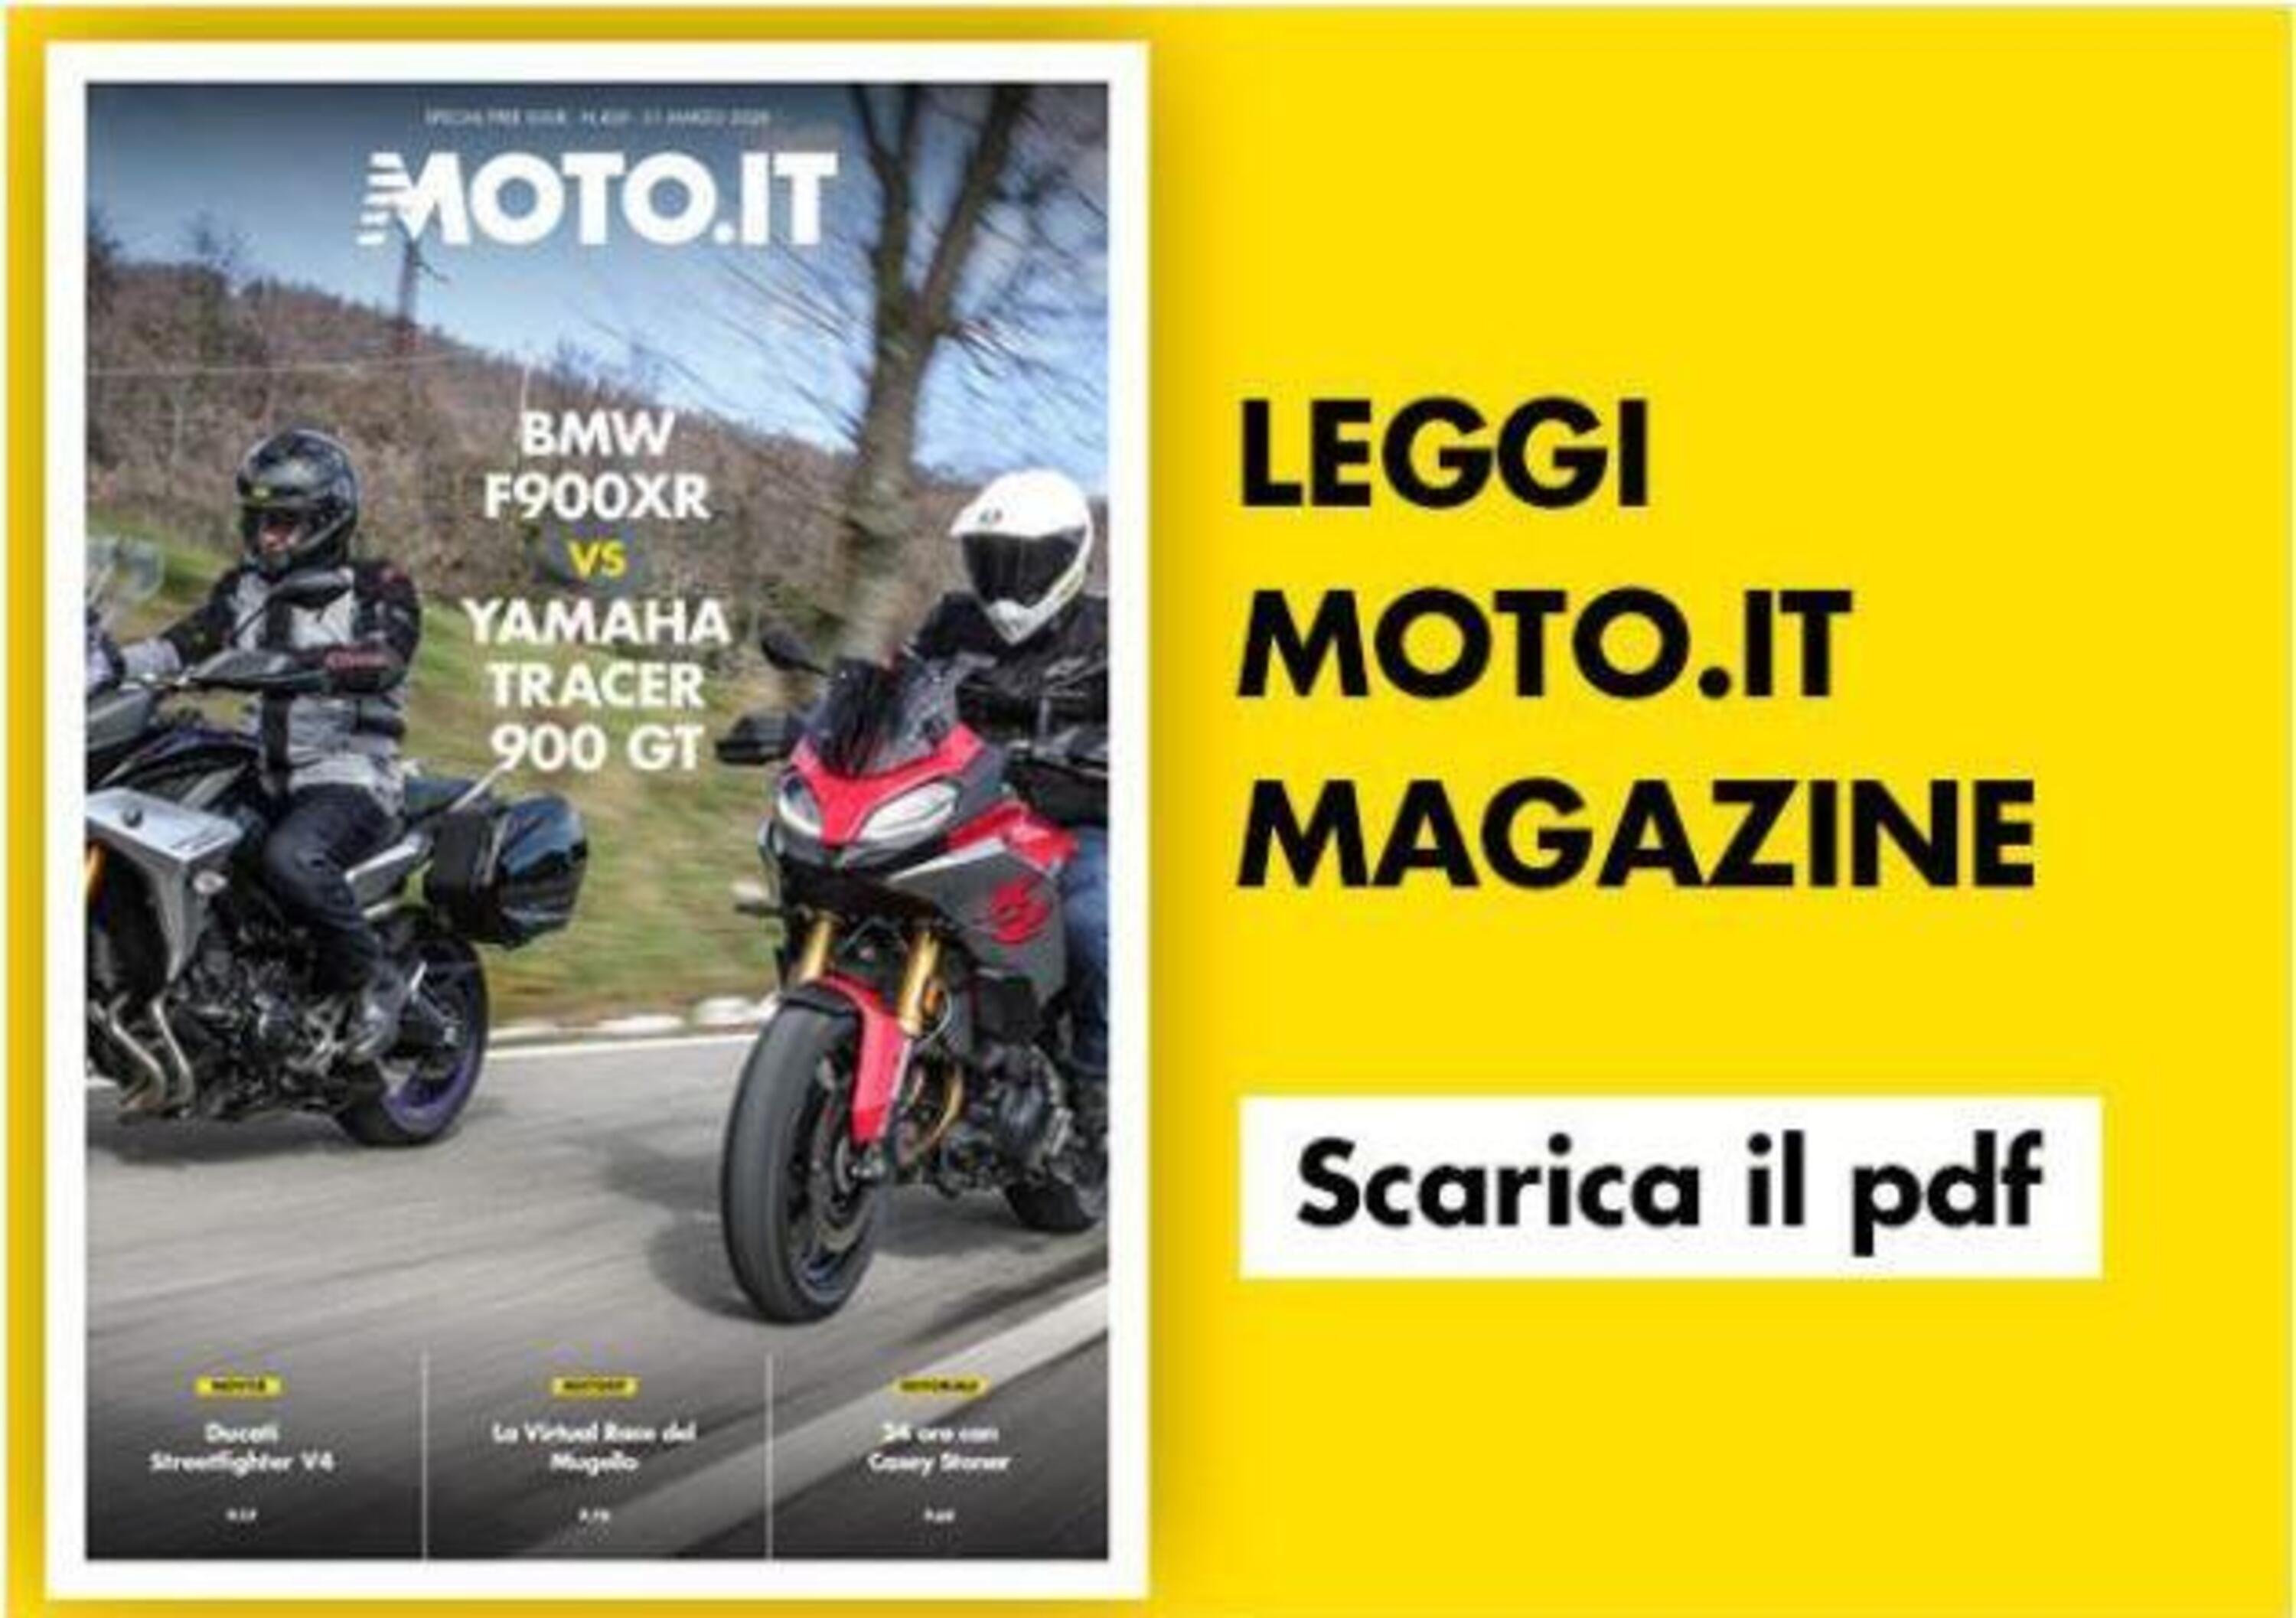 Magazine n&deg; 420, scarica e leggi il meglio di Moto.it 